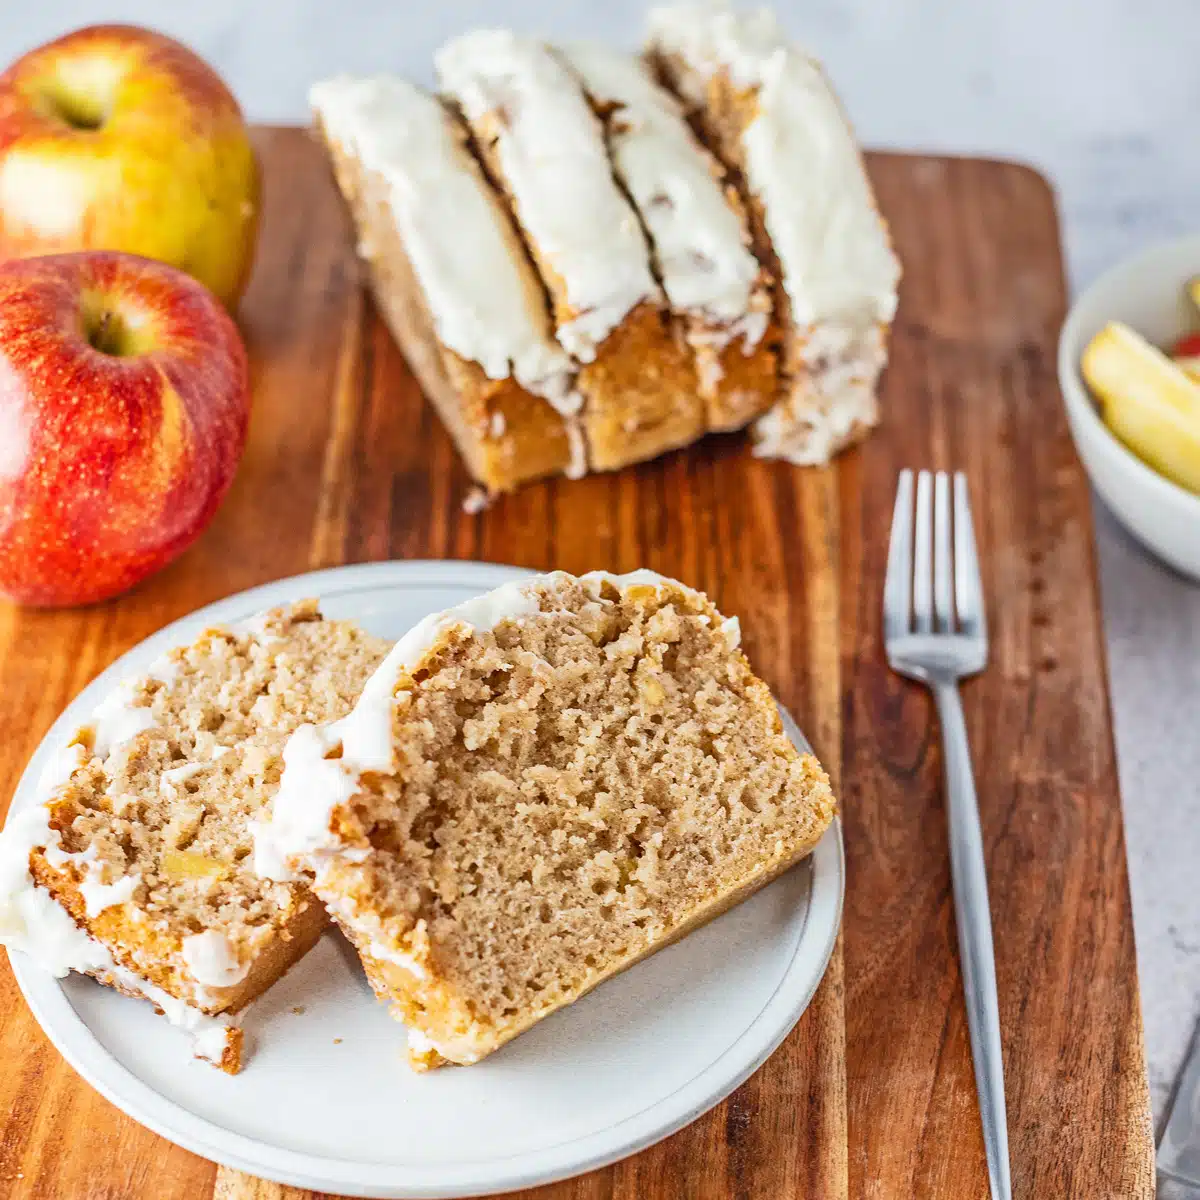 Gambar persegi roti apel kayu manis diiris dan di atas piring putih.